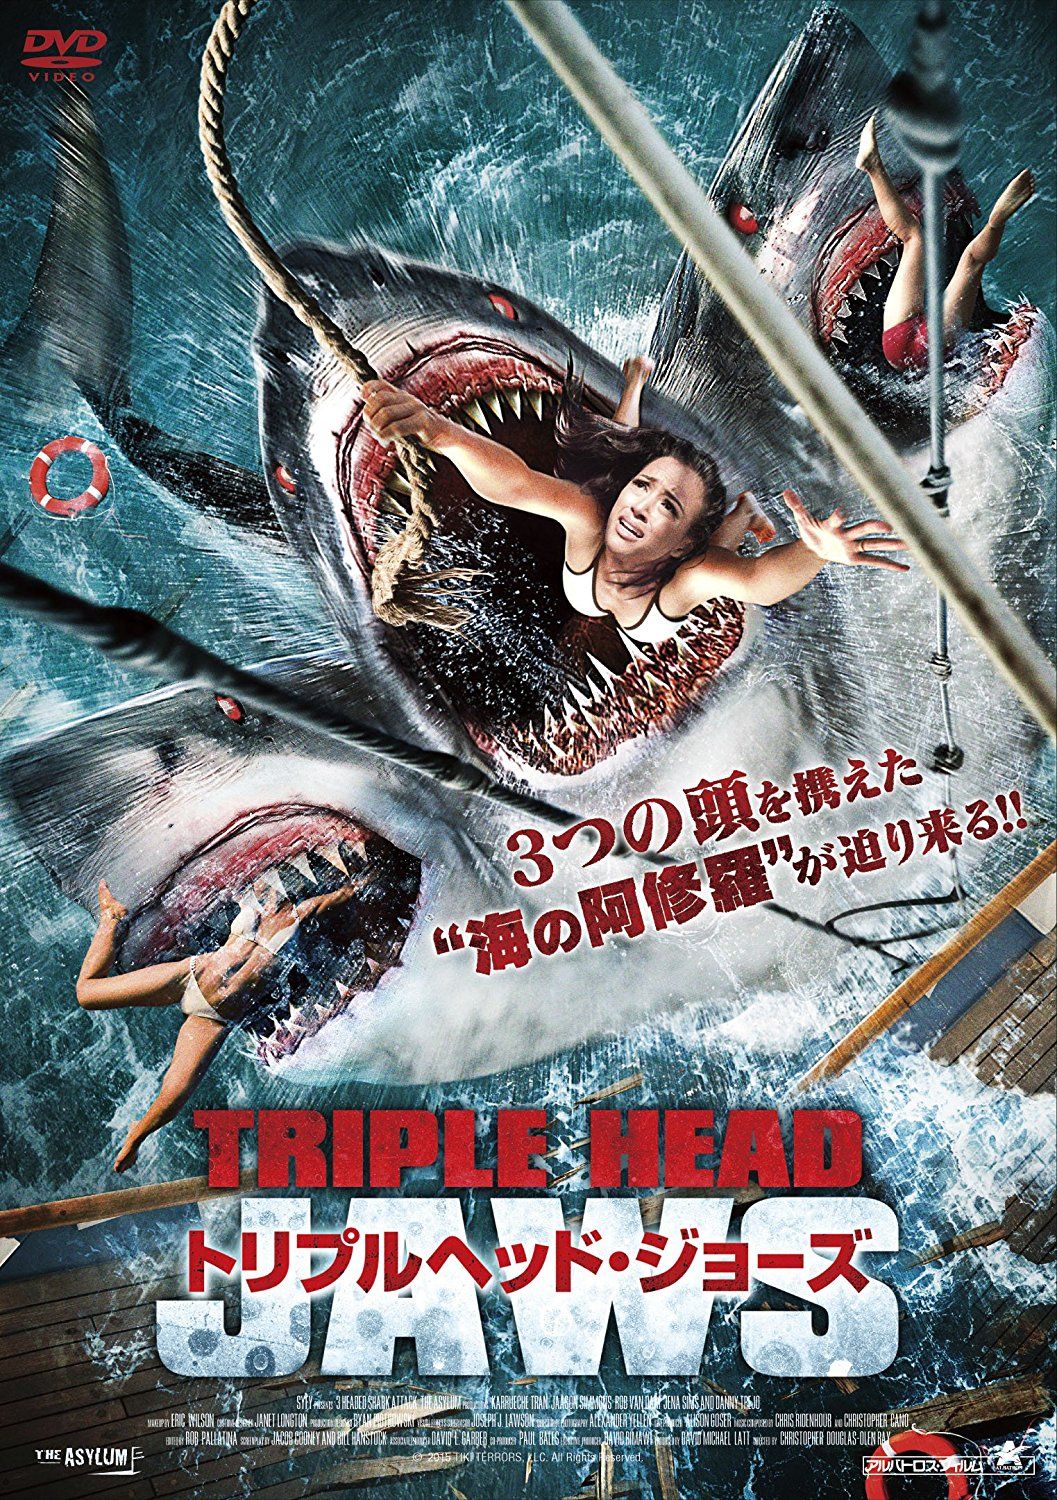 3 Headed Shark Attack Video 2015 .imdb.com